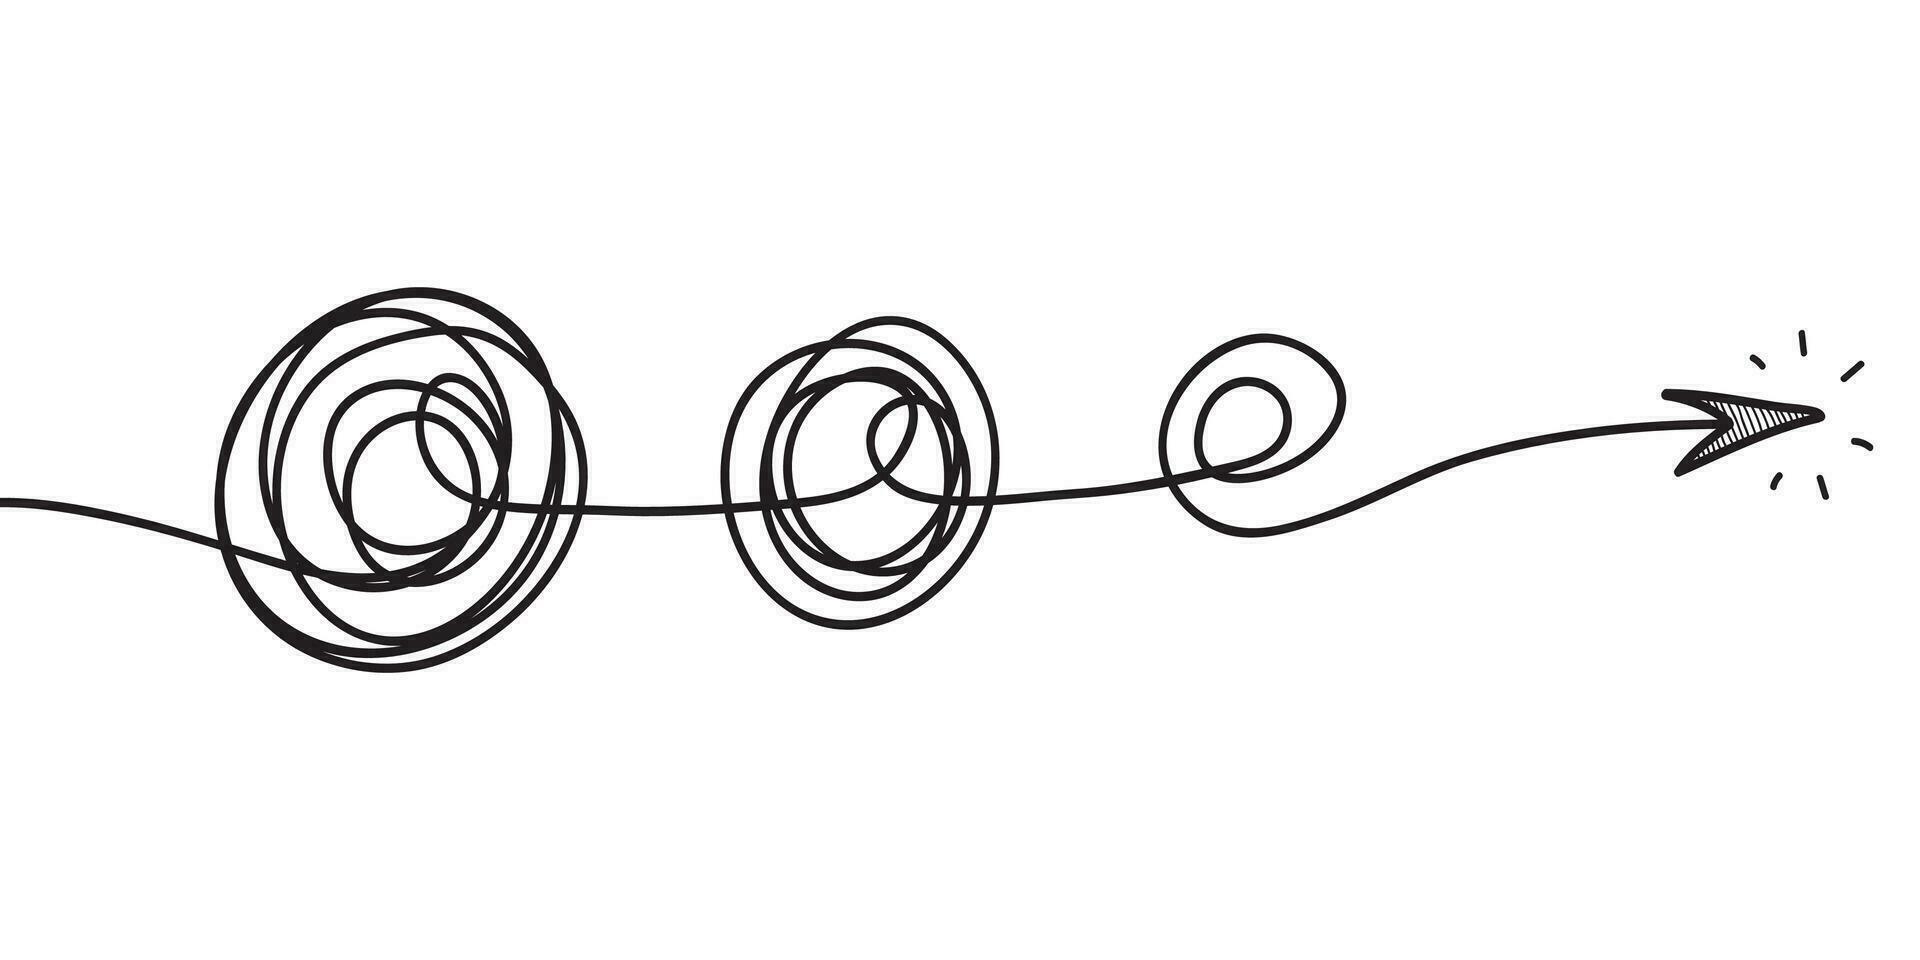 objet de cercle de croquis de gribouillis dessiné à la main chaotique avec début et fin isolé sur fond blanc vecteur